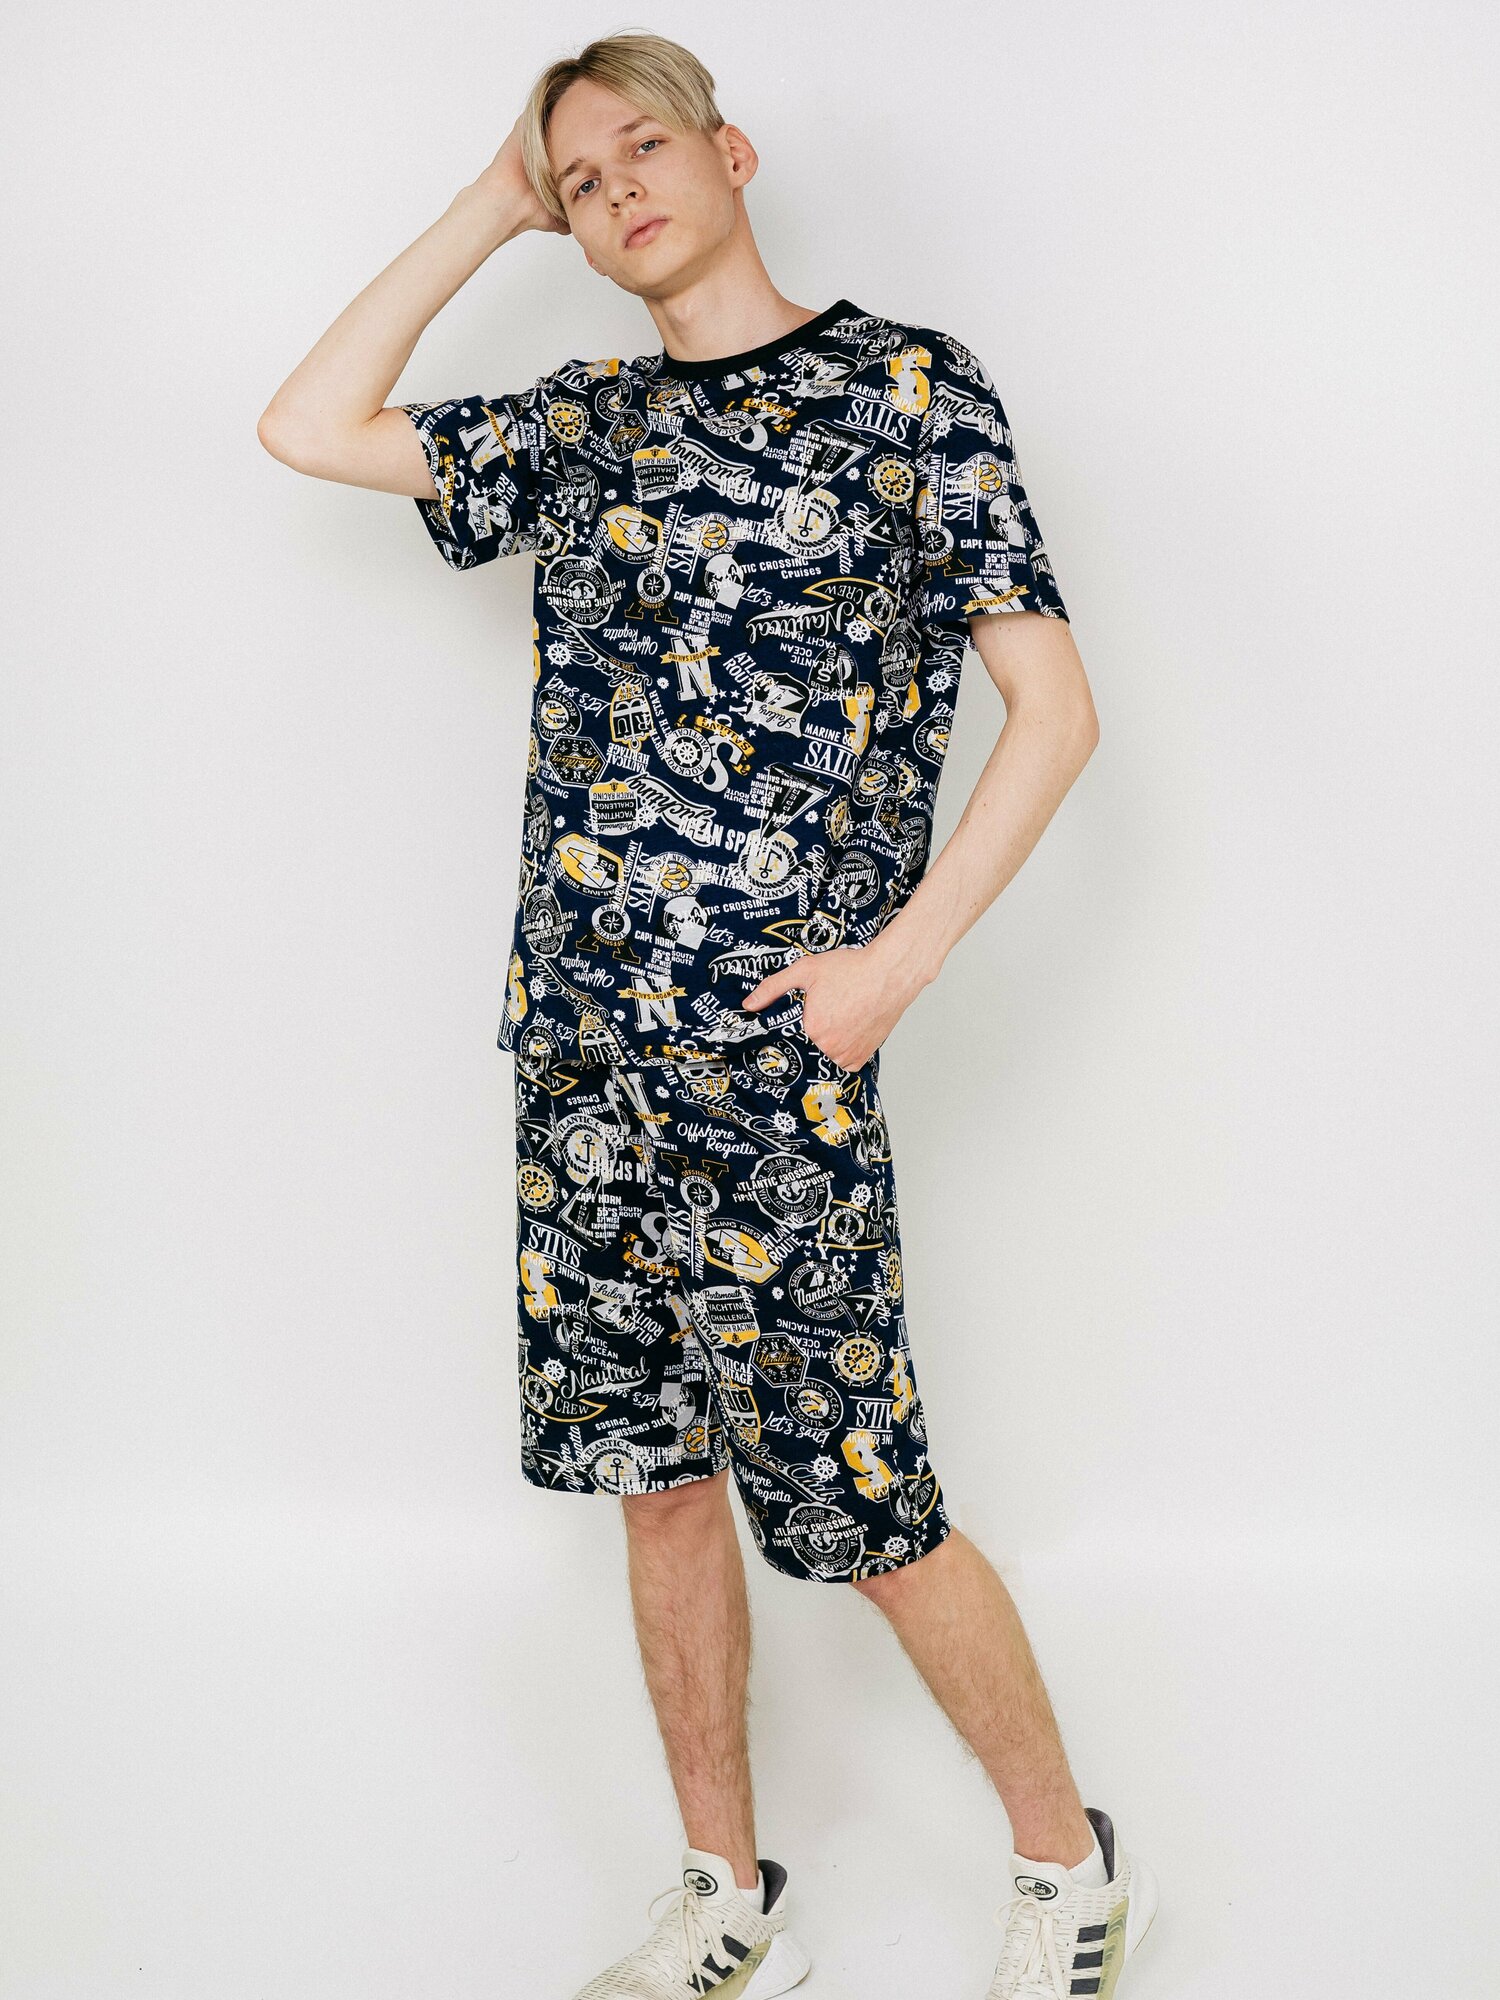 Мужская пижама, мужской пижамный комплект ARISTARHOV, Футболка + Шорты, Синий серый, размер 52 - фотография № 8